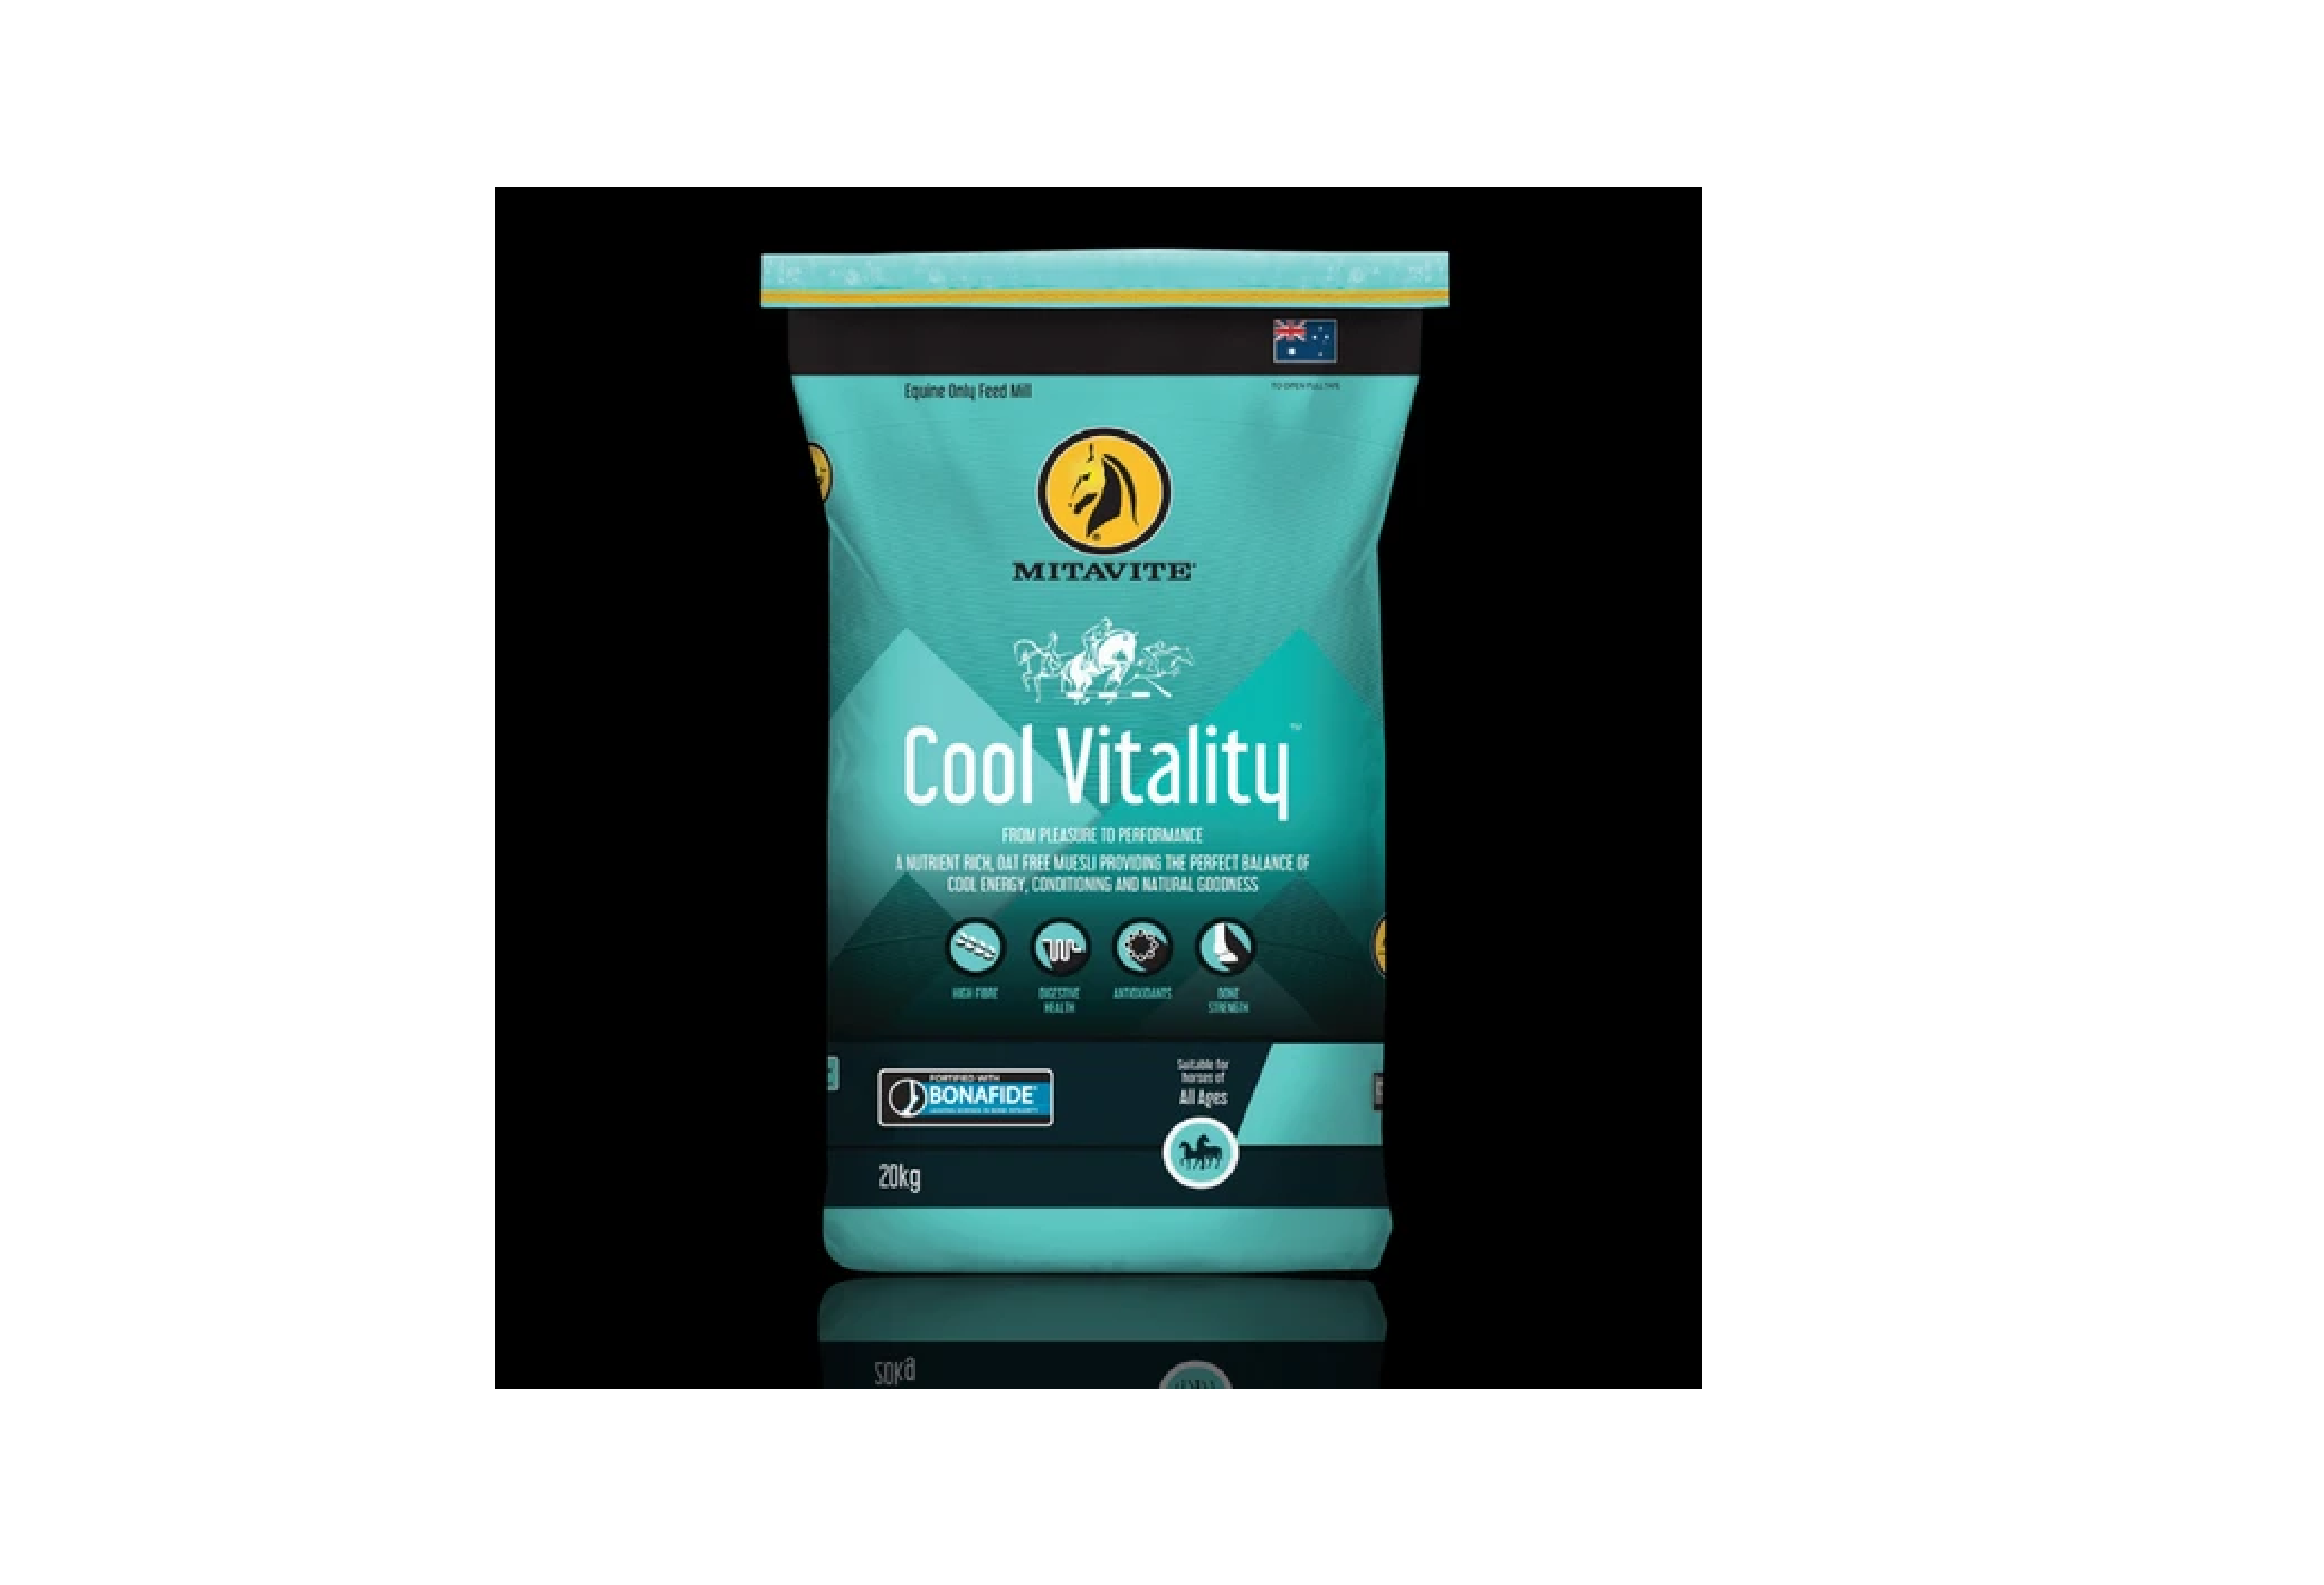 Buy Cool Vitality® by Mitavite online - Mitavite AU